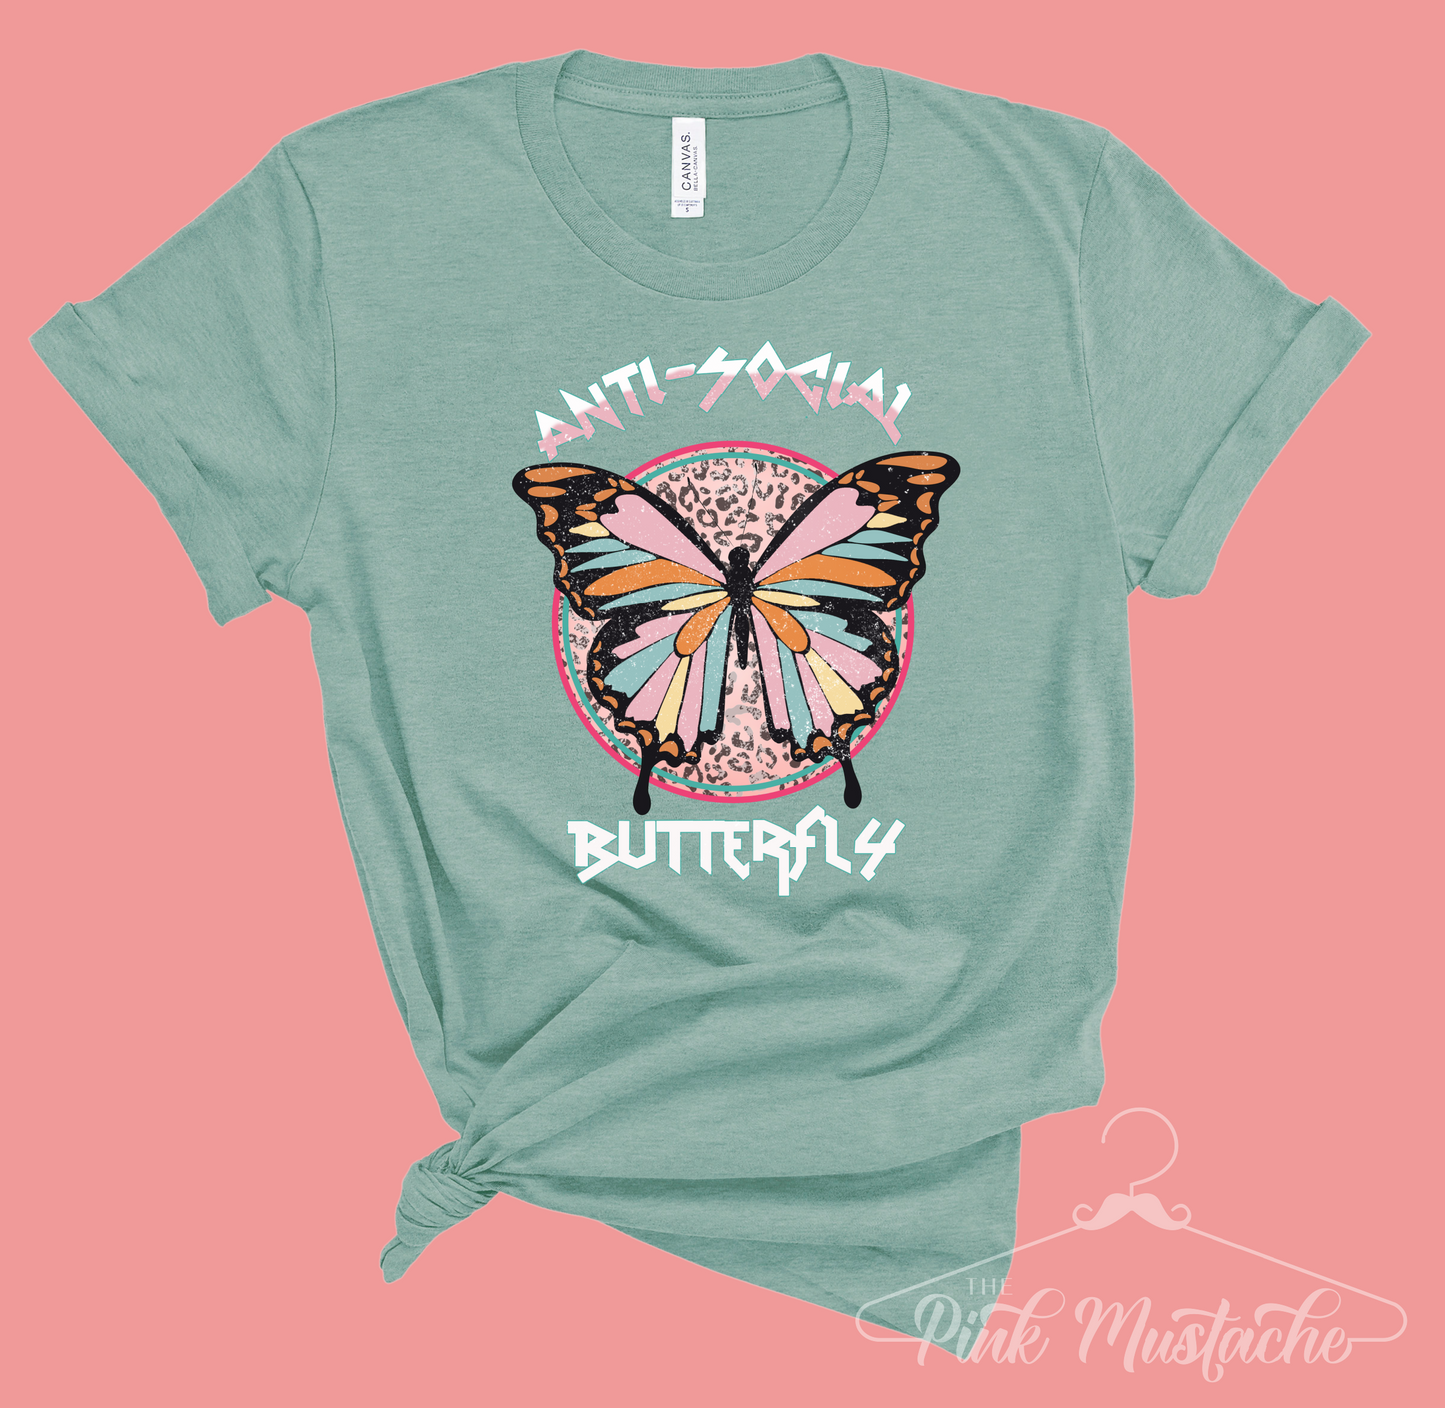 Anti-Social Butterfly Rocker Tee - Unisex Sized/ Vintage Rock N Roll Styled Hippie Shirt